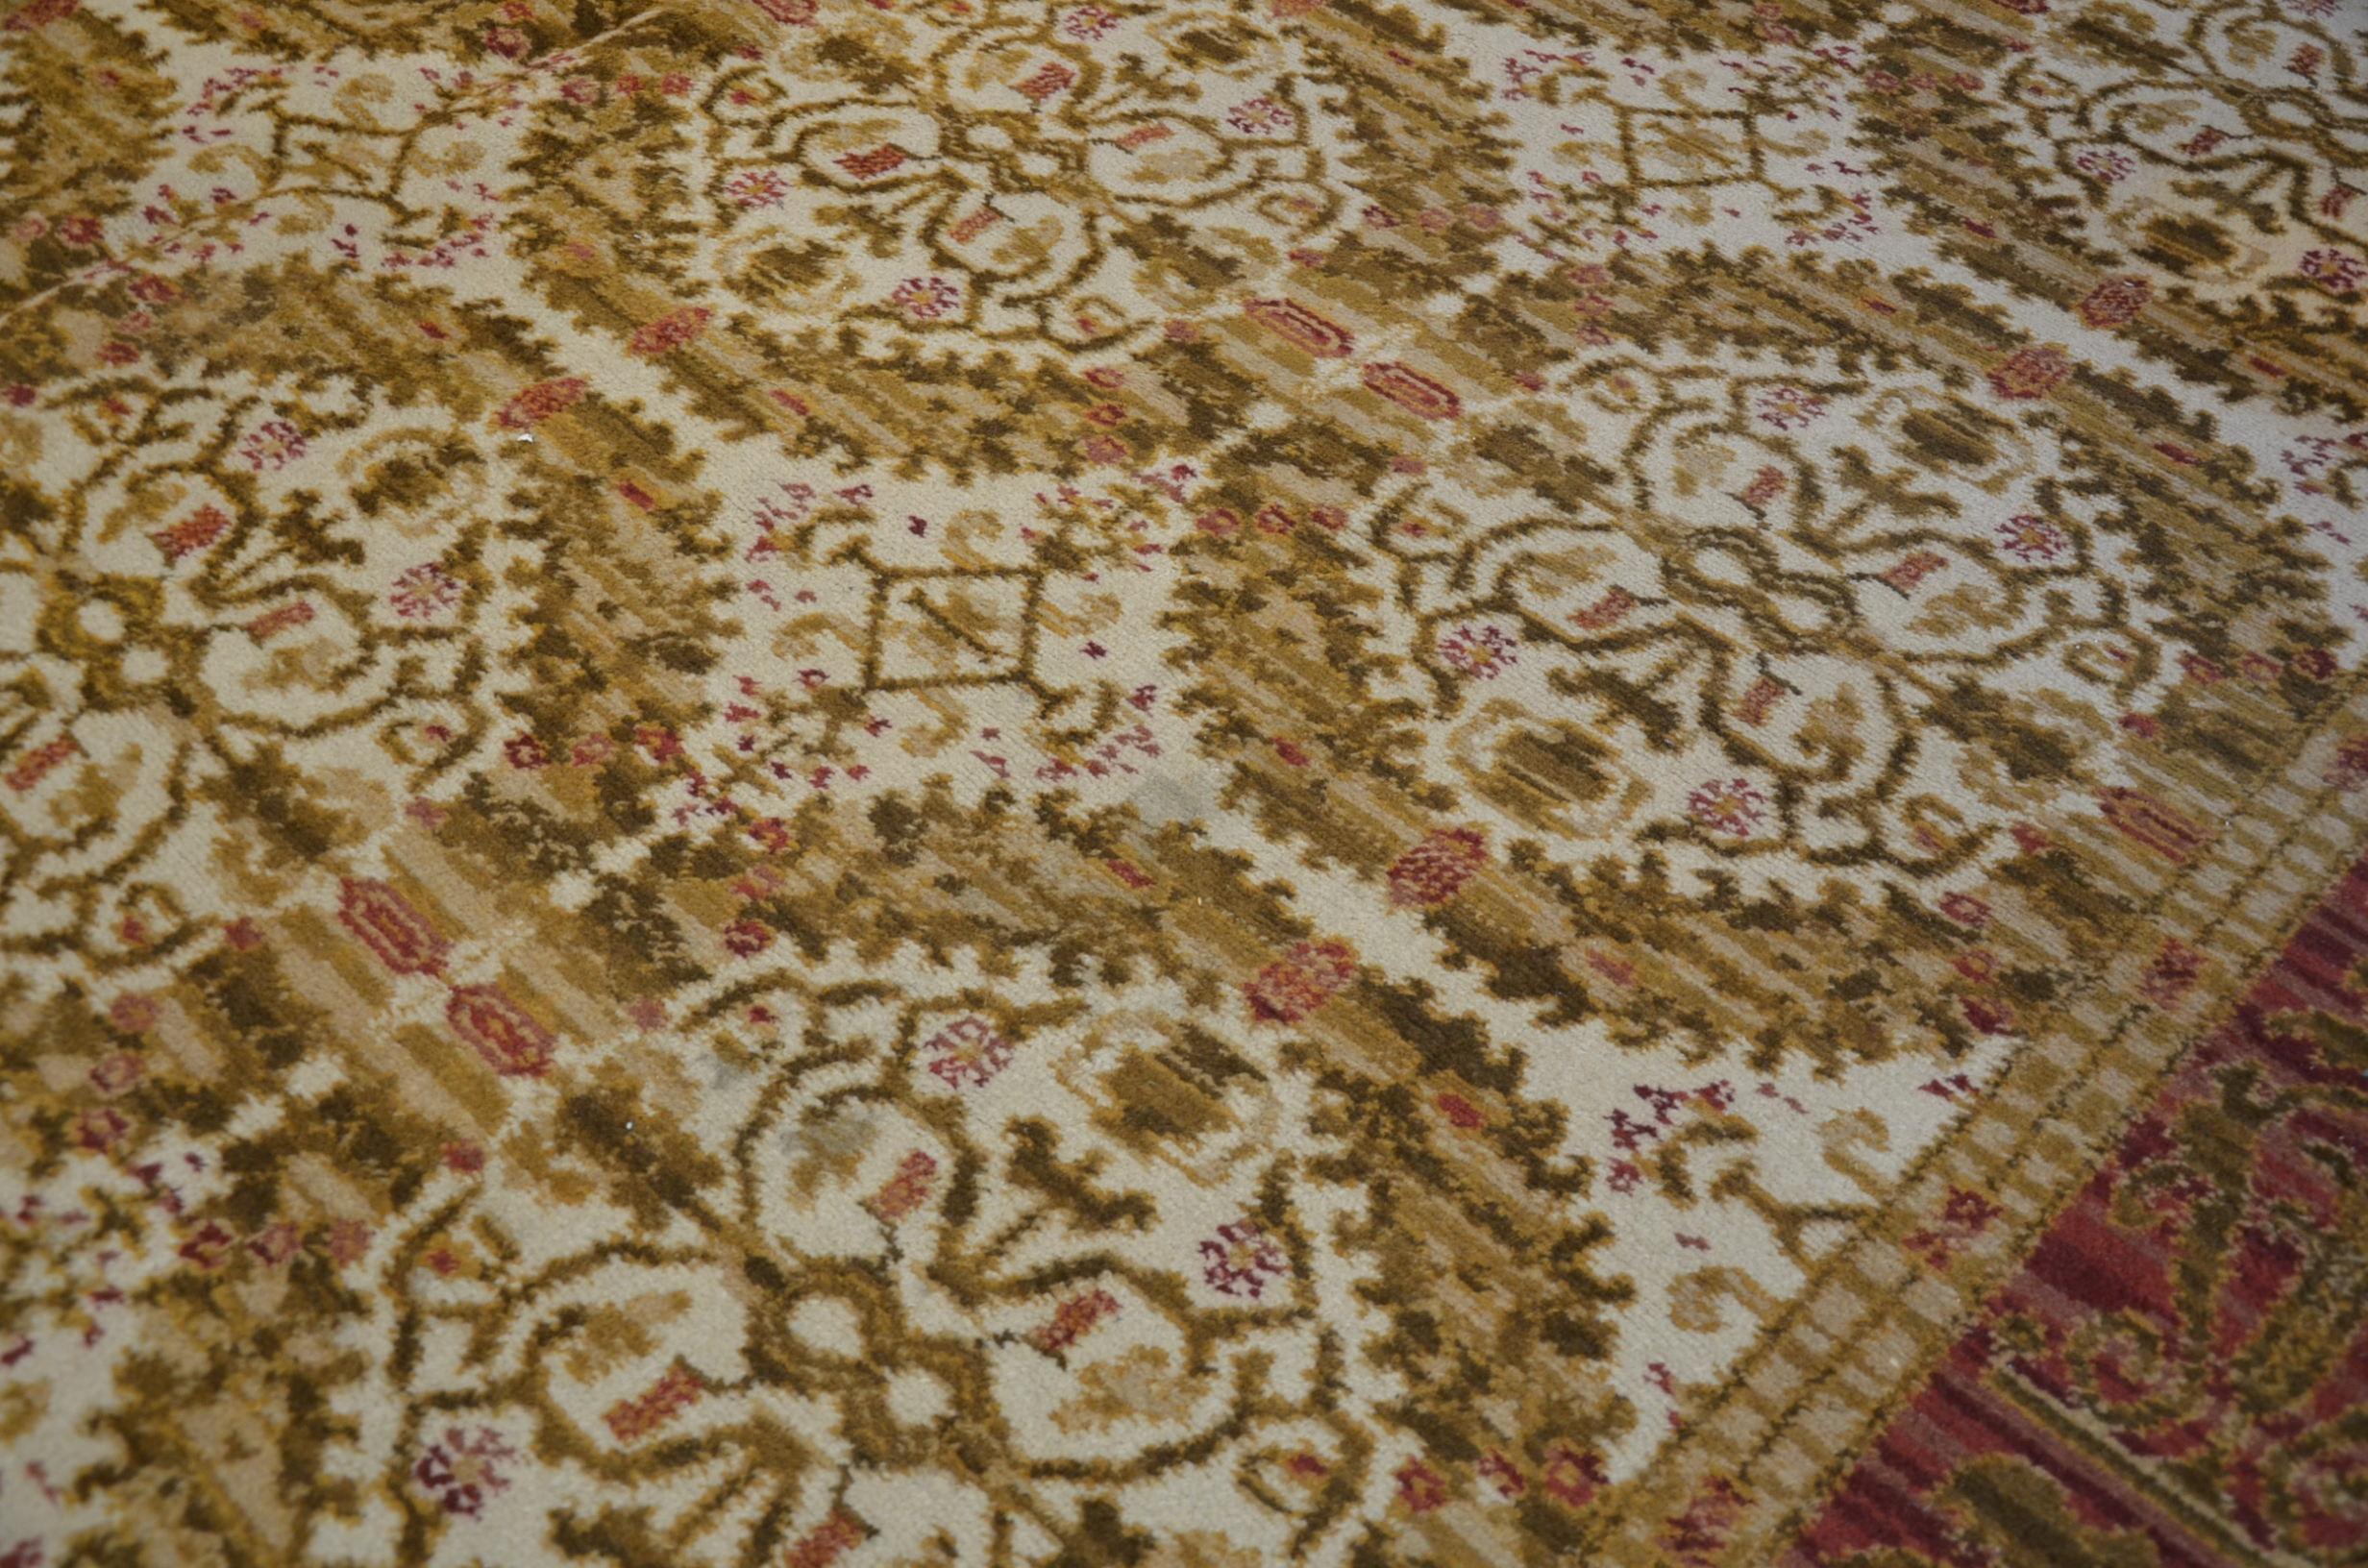 Spanischer Knüpfteppich aus der Zeit um 1950. Tipical Design Fundation Teppiche.
Handgefertigt aus Wolle in Grün- und Rosatönen auf beigem Hintergrund.
- Es zeichnet sich durch seinen ausgezeichneten Erhaltungszustand aus, ohne dass es restauriert